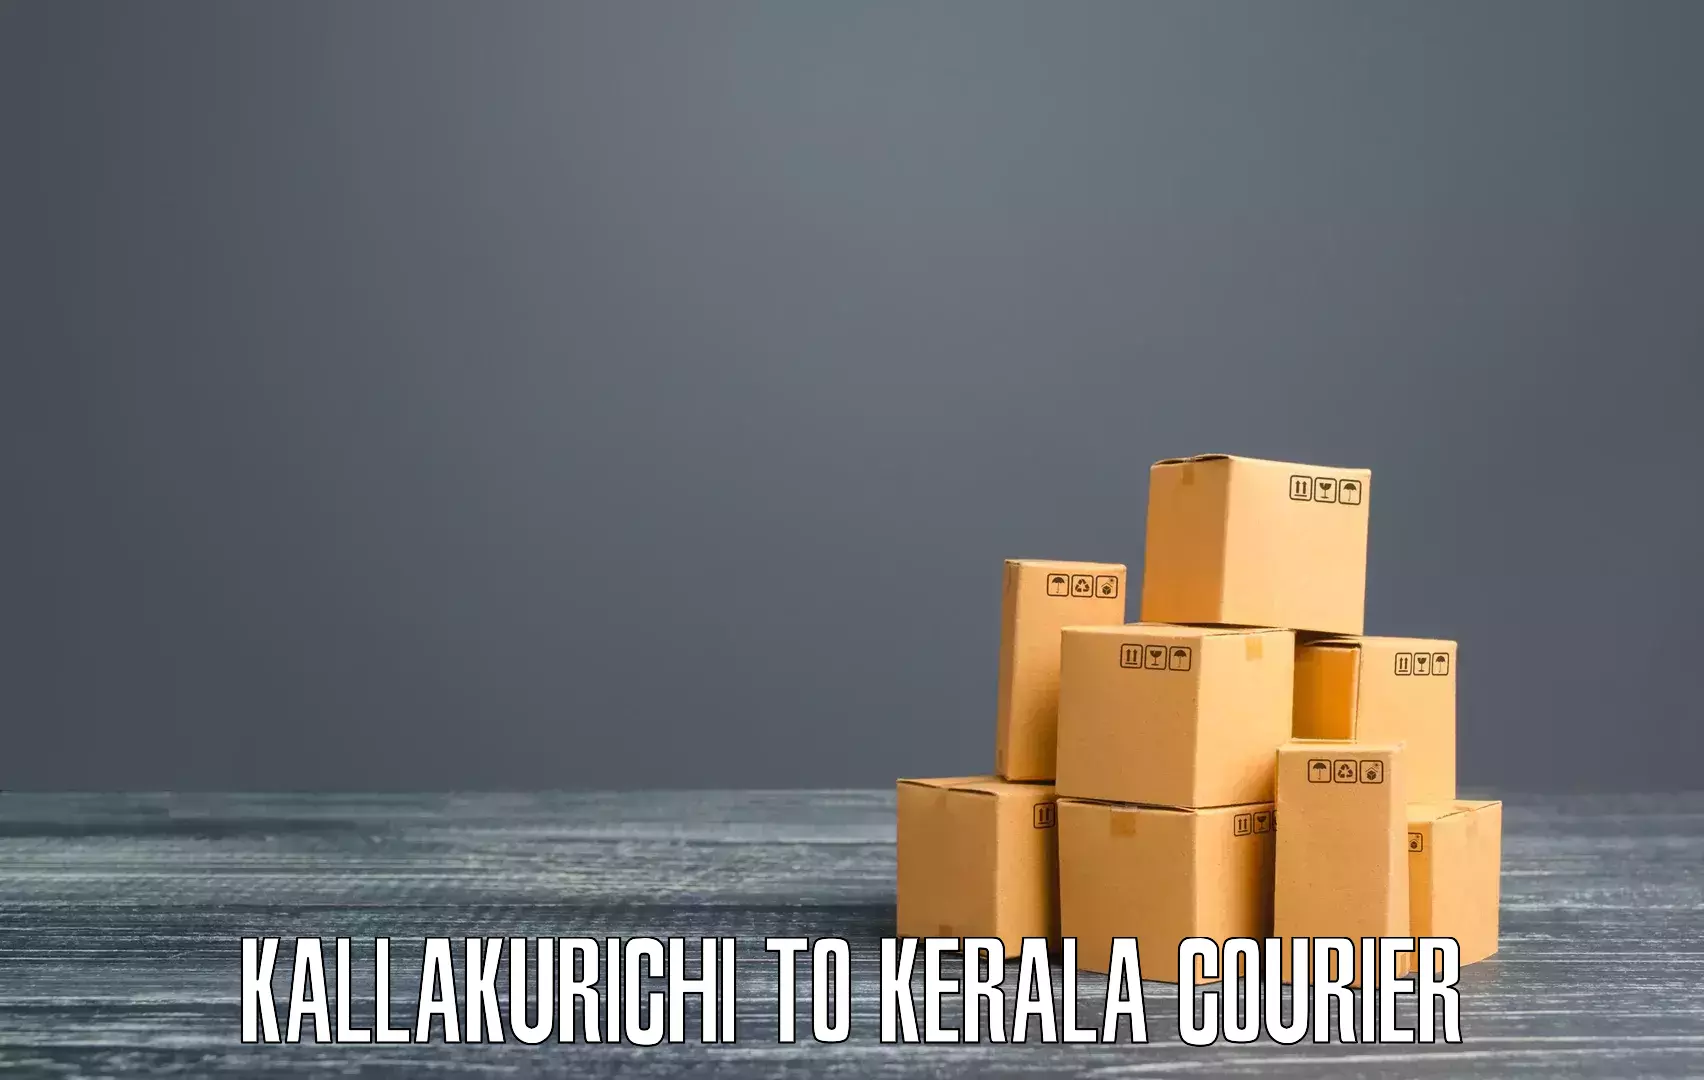 Overnight delivery services Kallakurichi to Koothattukulam